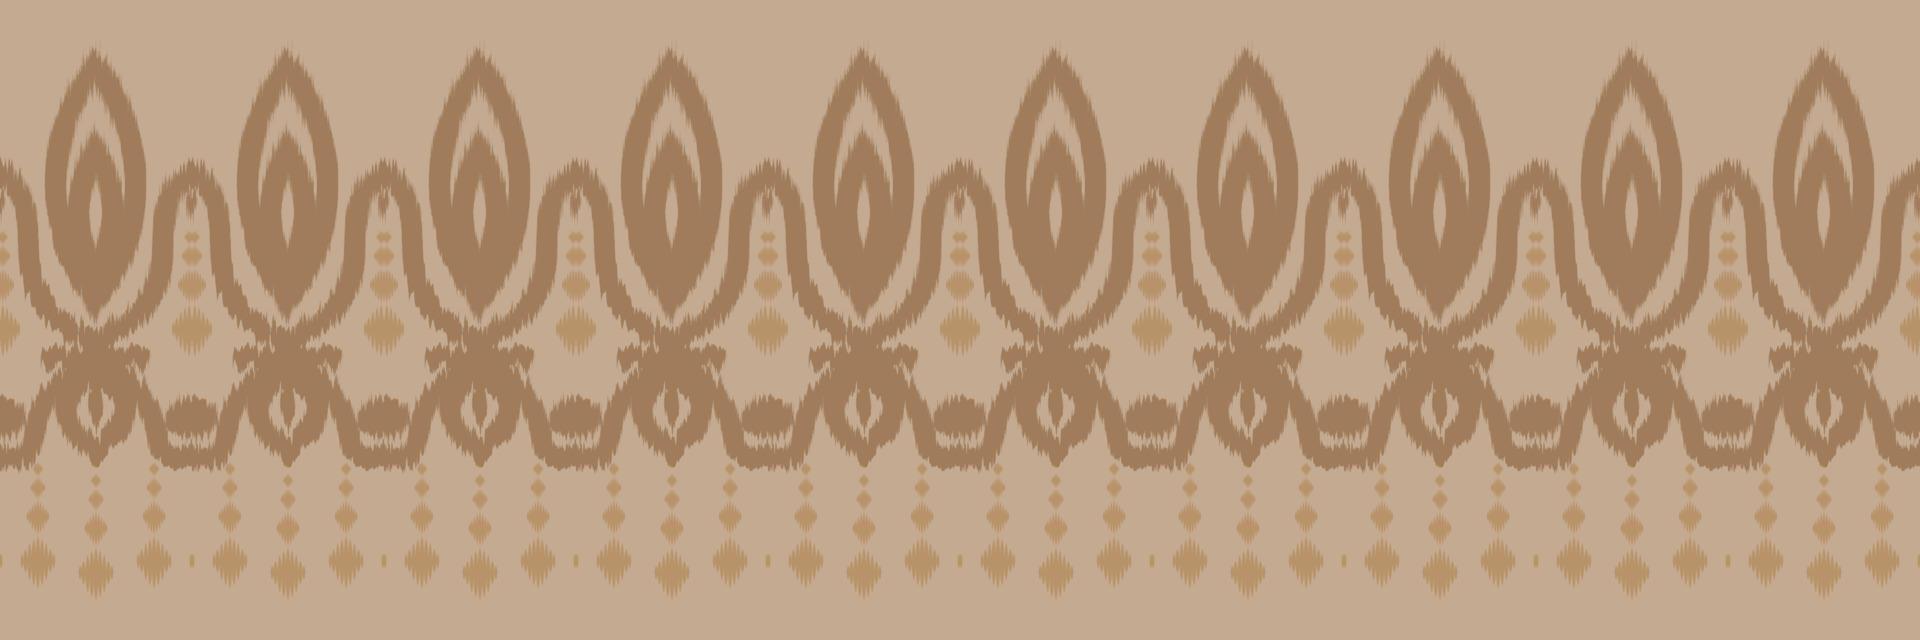 vetor étnico ikat batik têxtil padrão sem costura design de vetor digital para impressão saree kurti borneo tecido borda escova símbolos amostras algodão